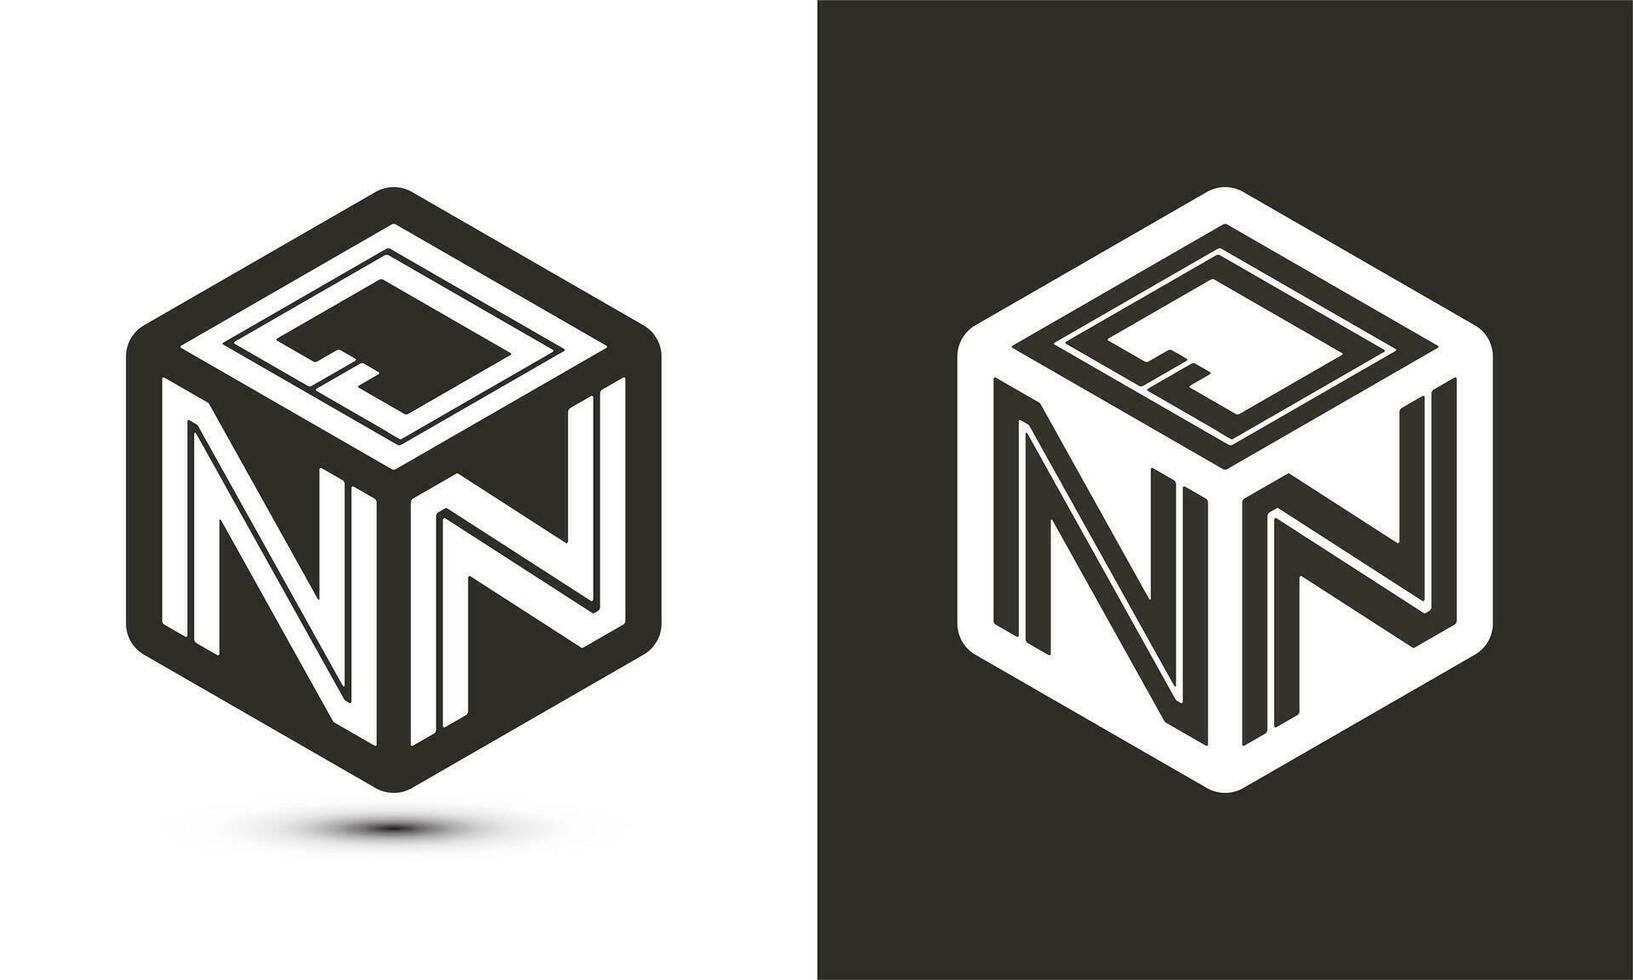 QNN letter logo design with illustrator cube logo, vector logo modern alphabet font overlap style.